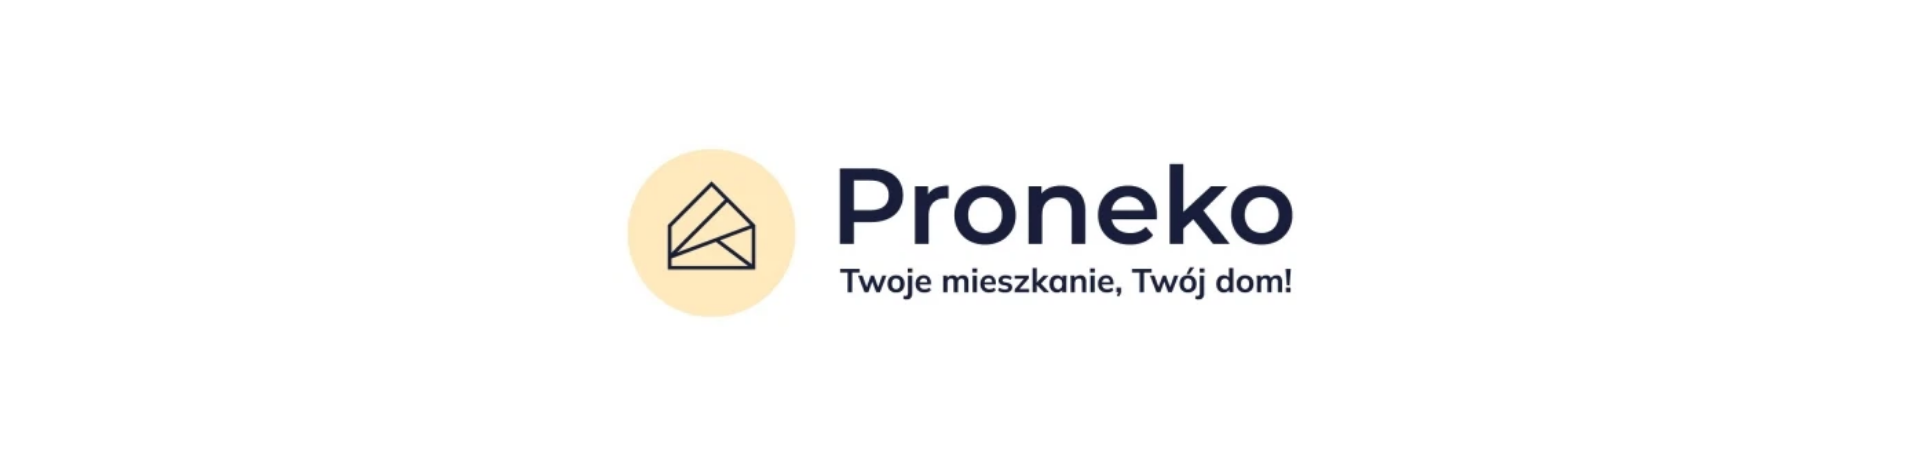 Proneko deweloper logo